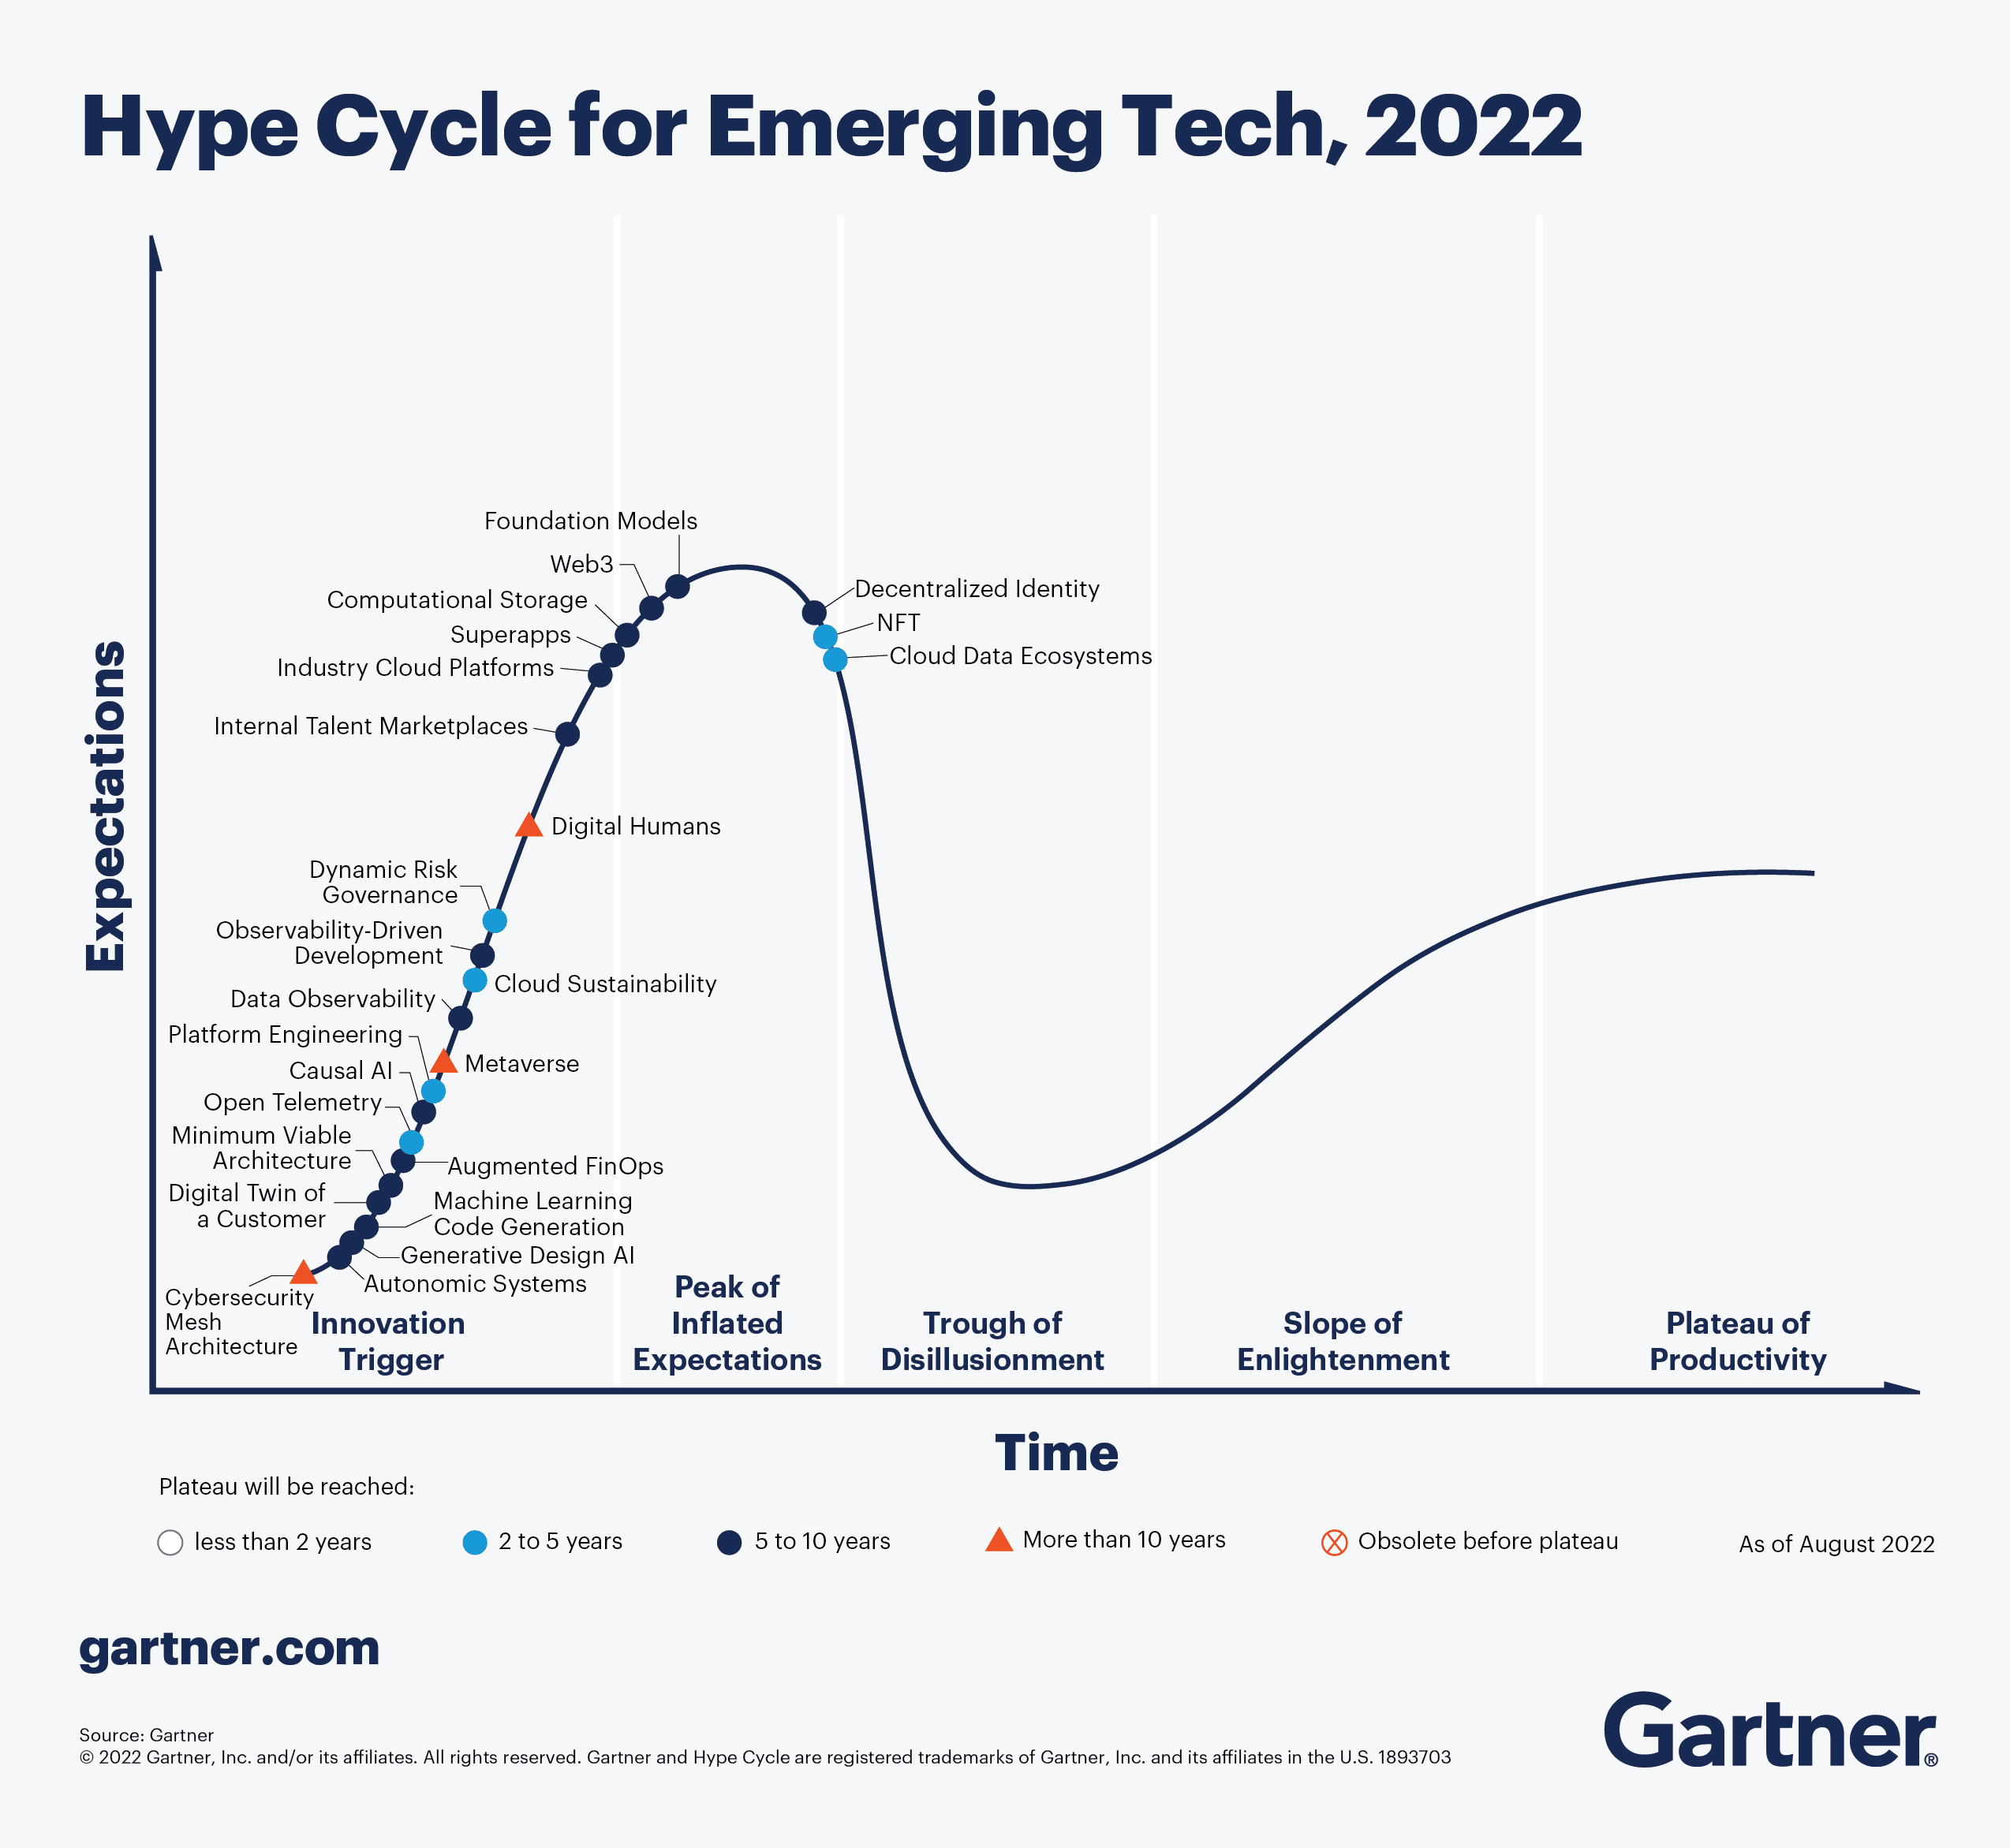 Graphique du Hype Cycle pour l'année 2022 plaçant les technologies emergentes le long de la courbe.